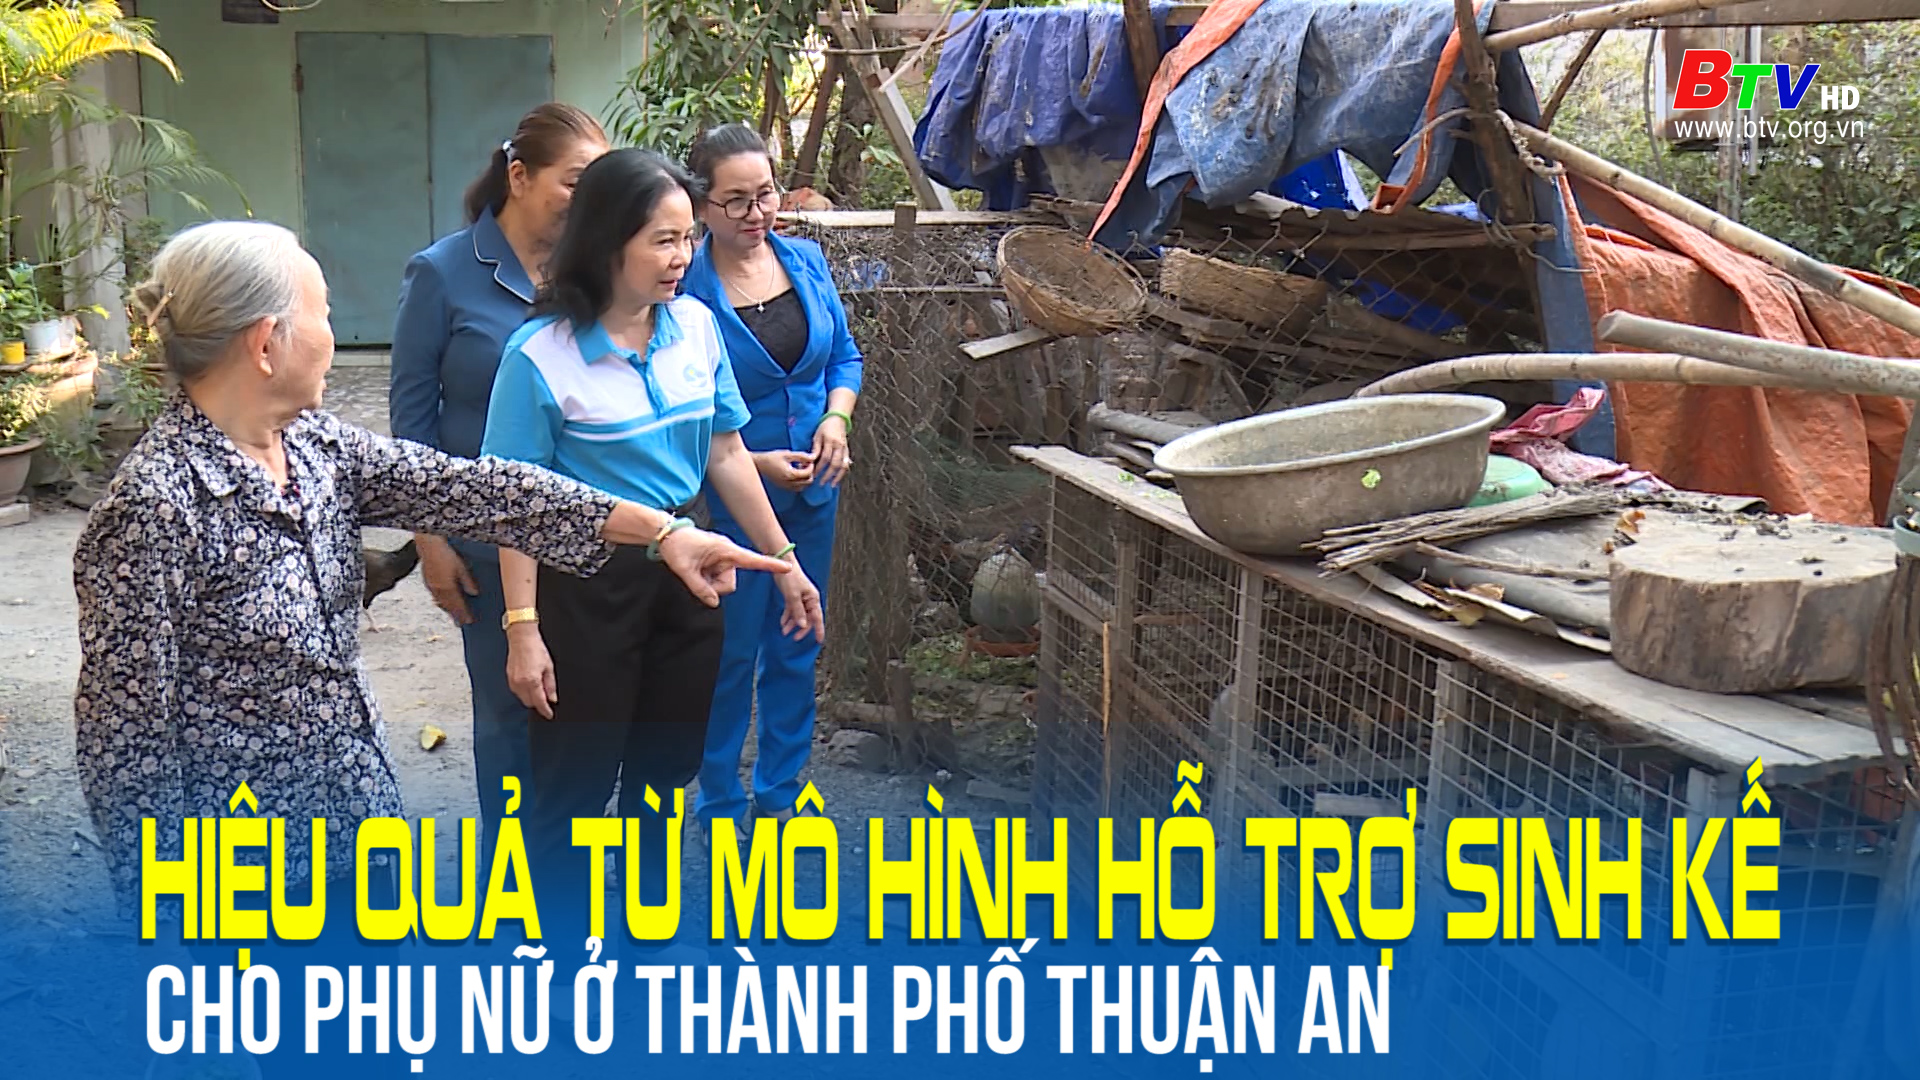 Hiệu quả từ mô hình hỗ trợ sinh kế cho phụ nữ ở thành phố Thuận An